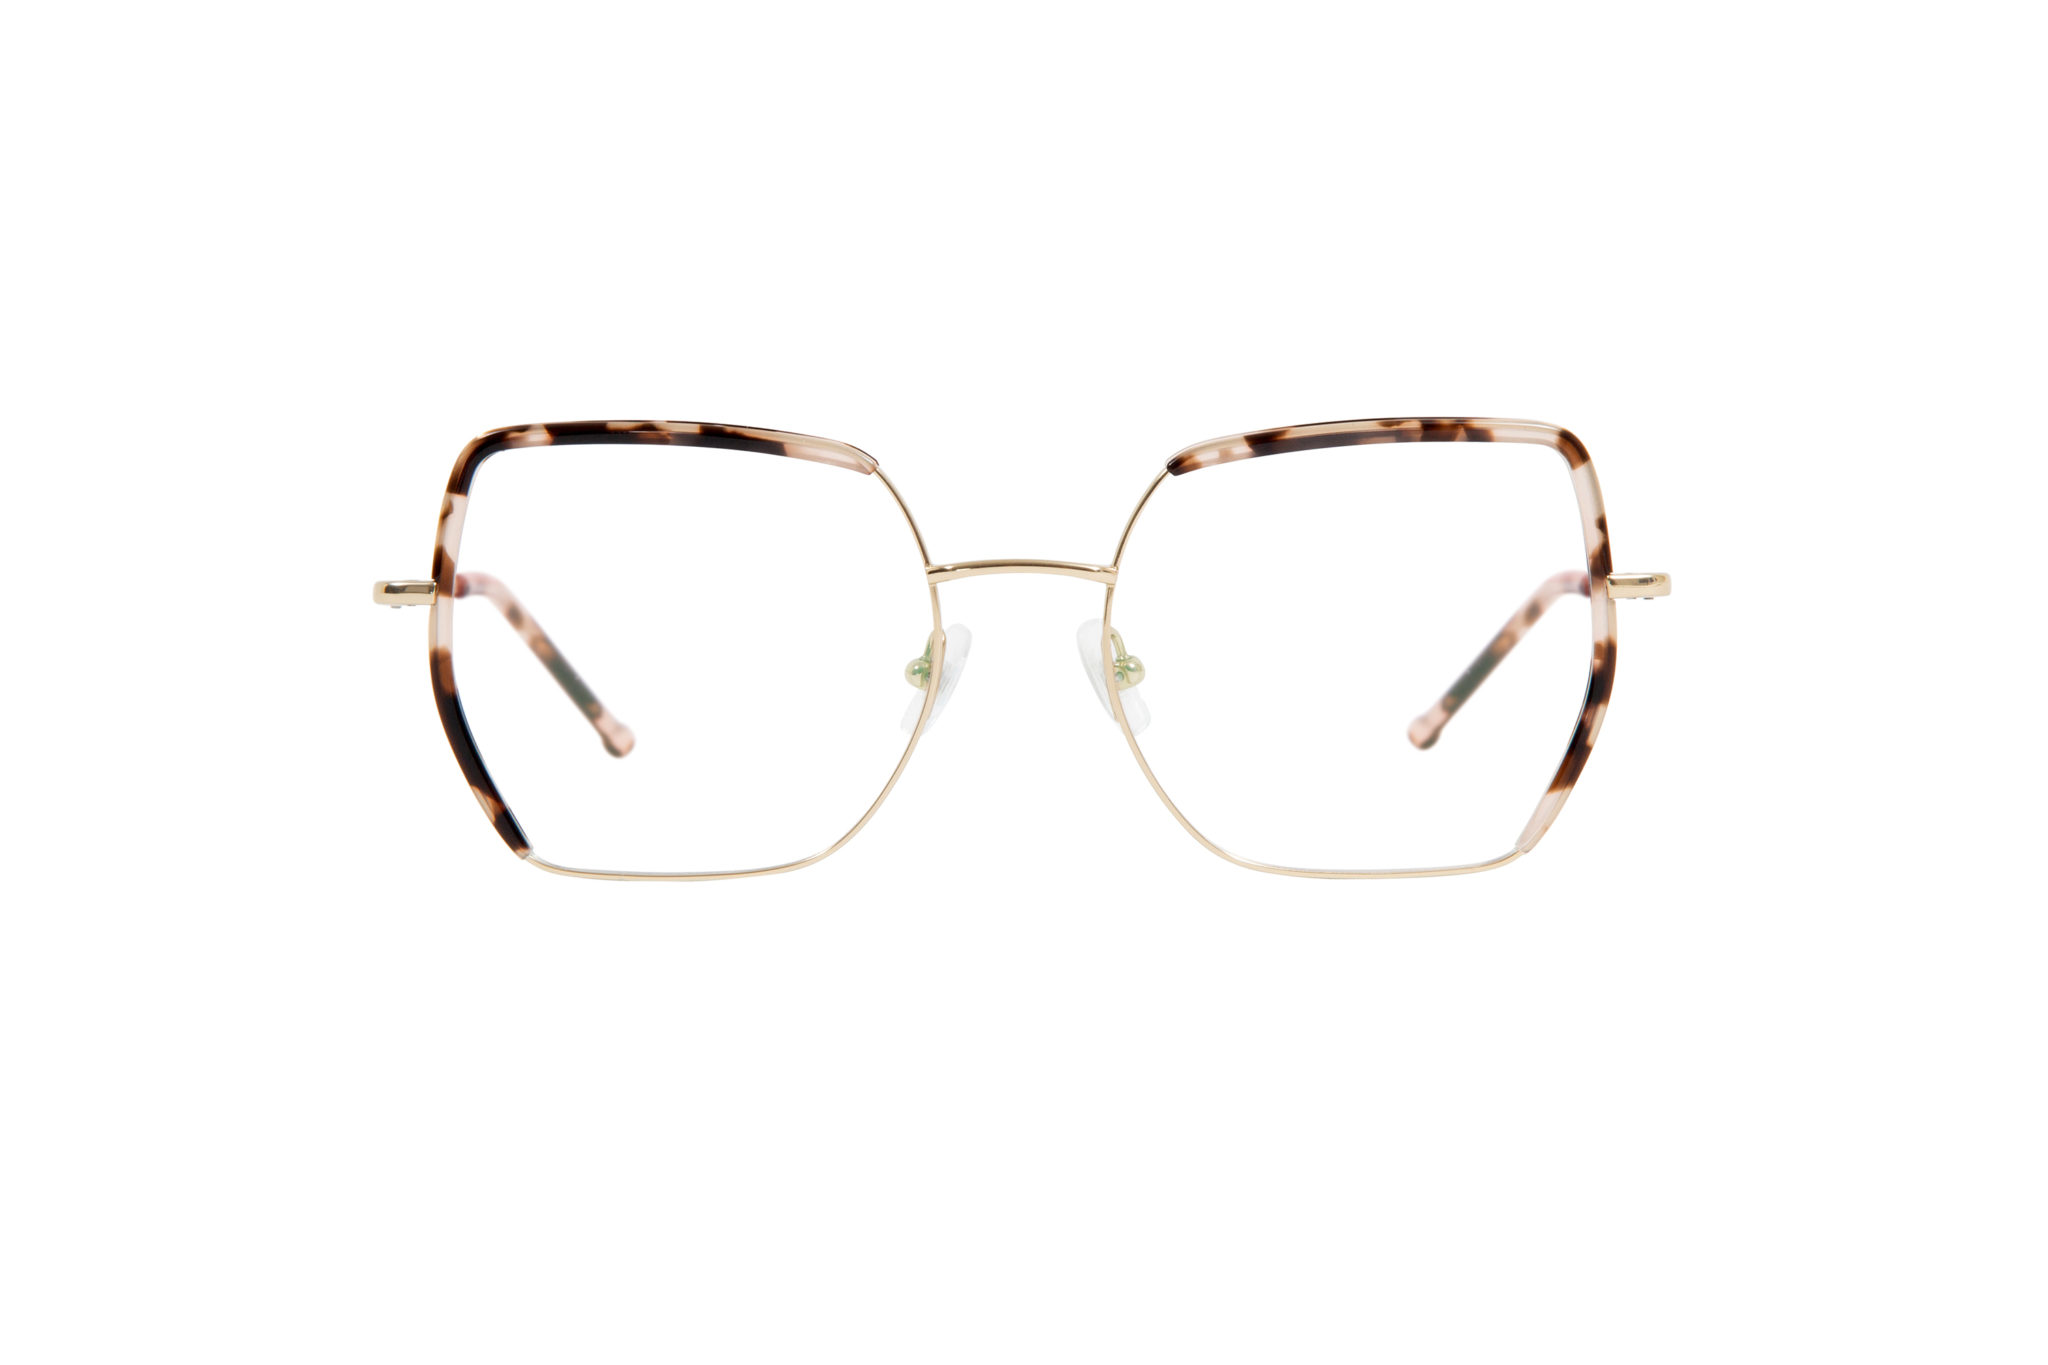 80902-minerva-squared-gold-optical-glasses-by-gigi-studios-2048x1365